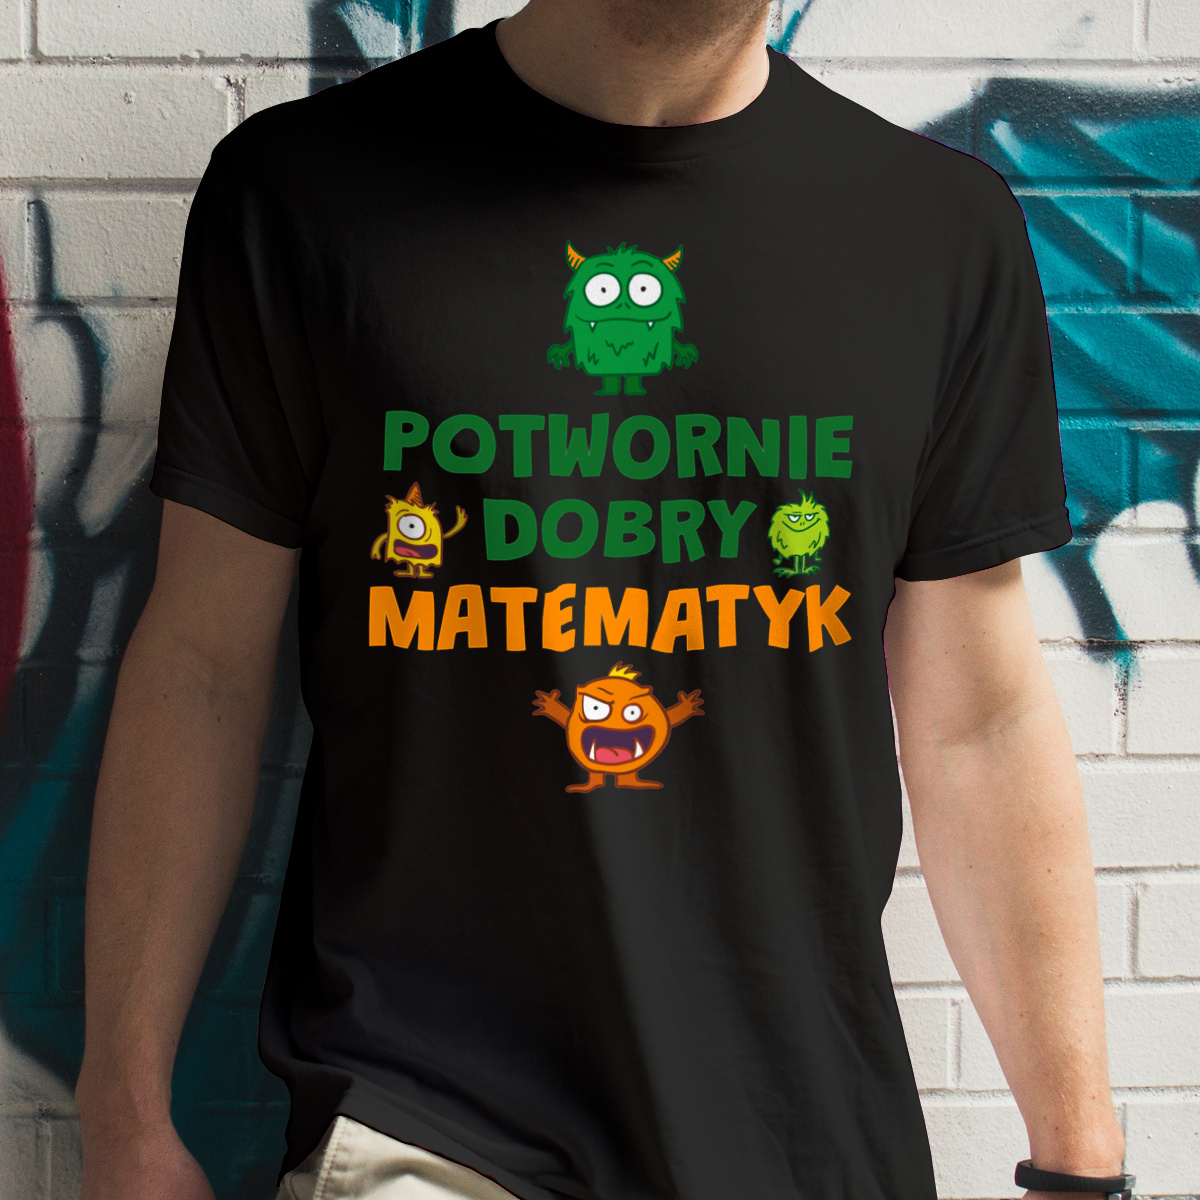 Potwornie Dobry Matematyk - Męska Koszulka Czarna